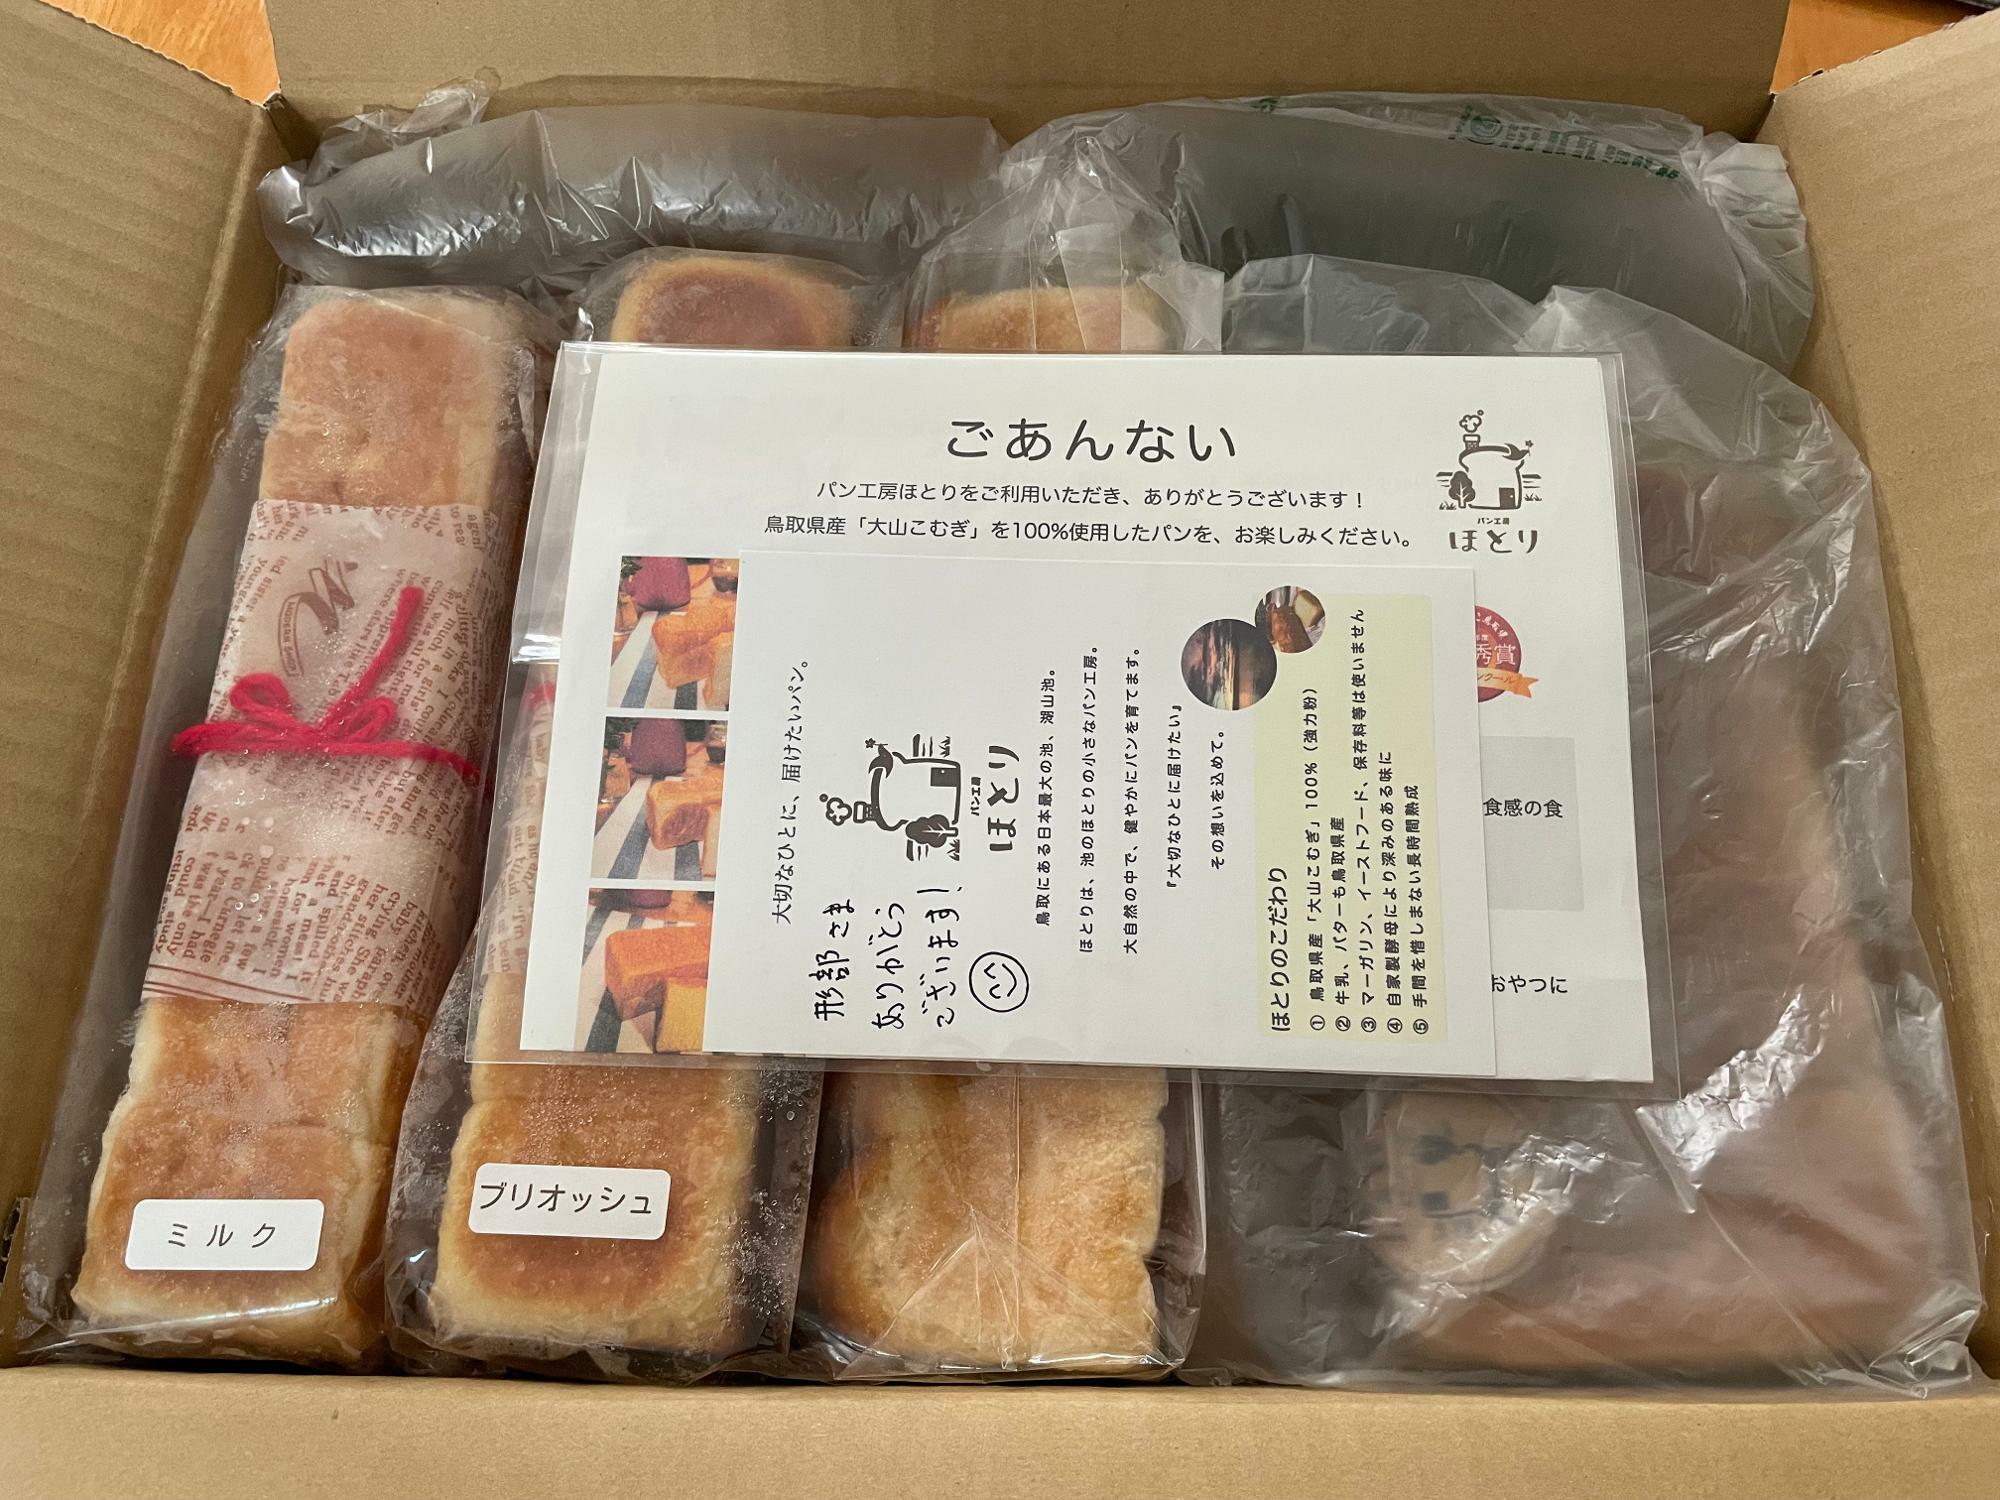 【送料込み】7種類の食パンセット【冷凍パン】